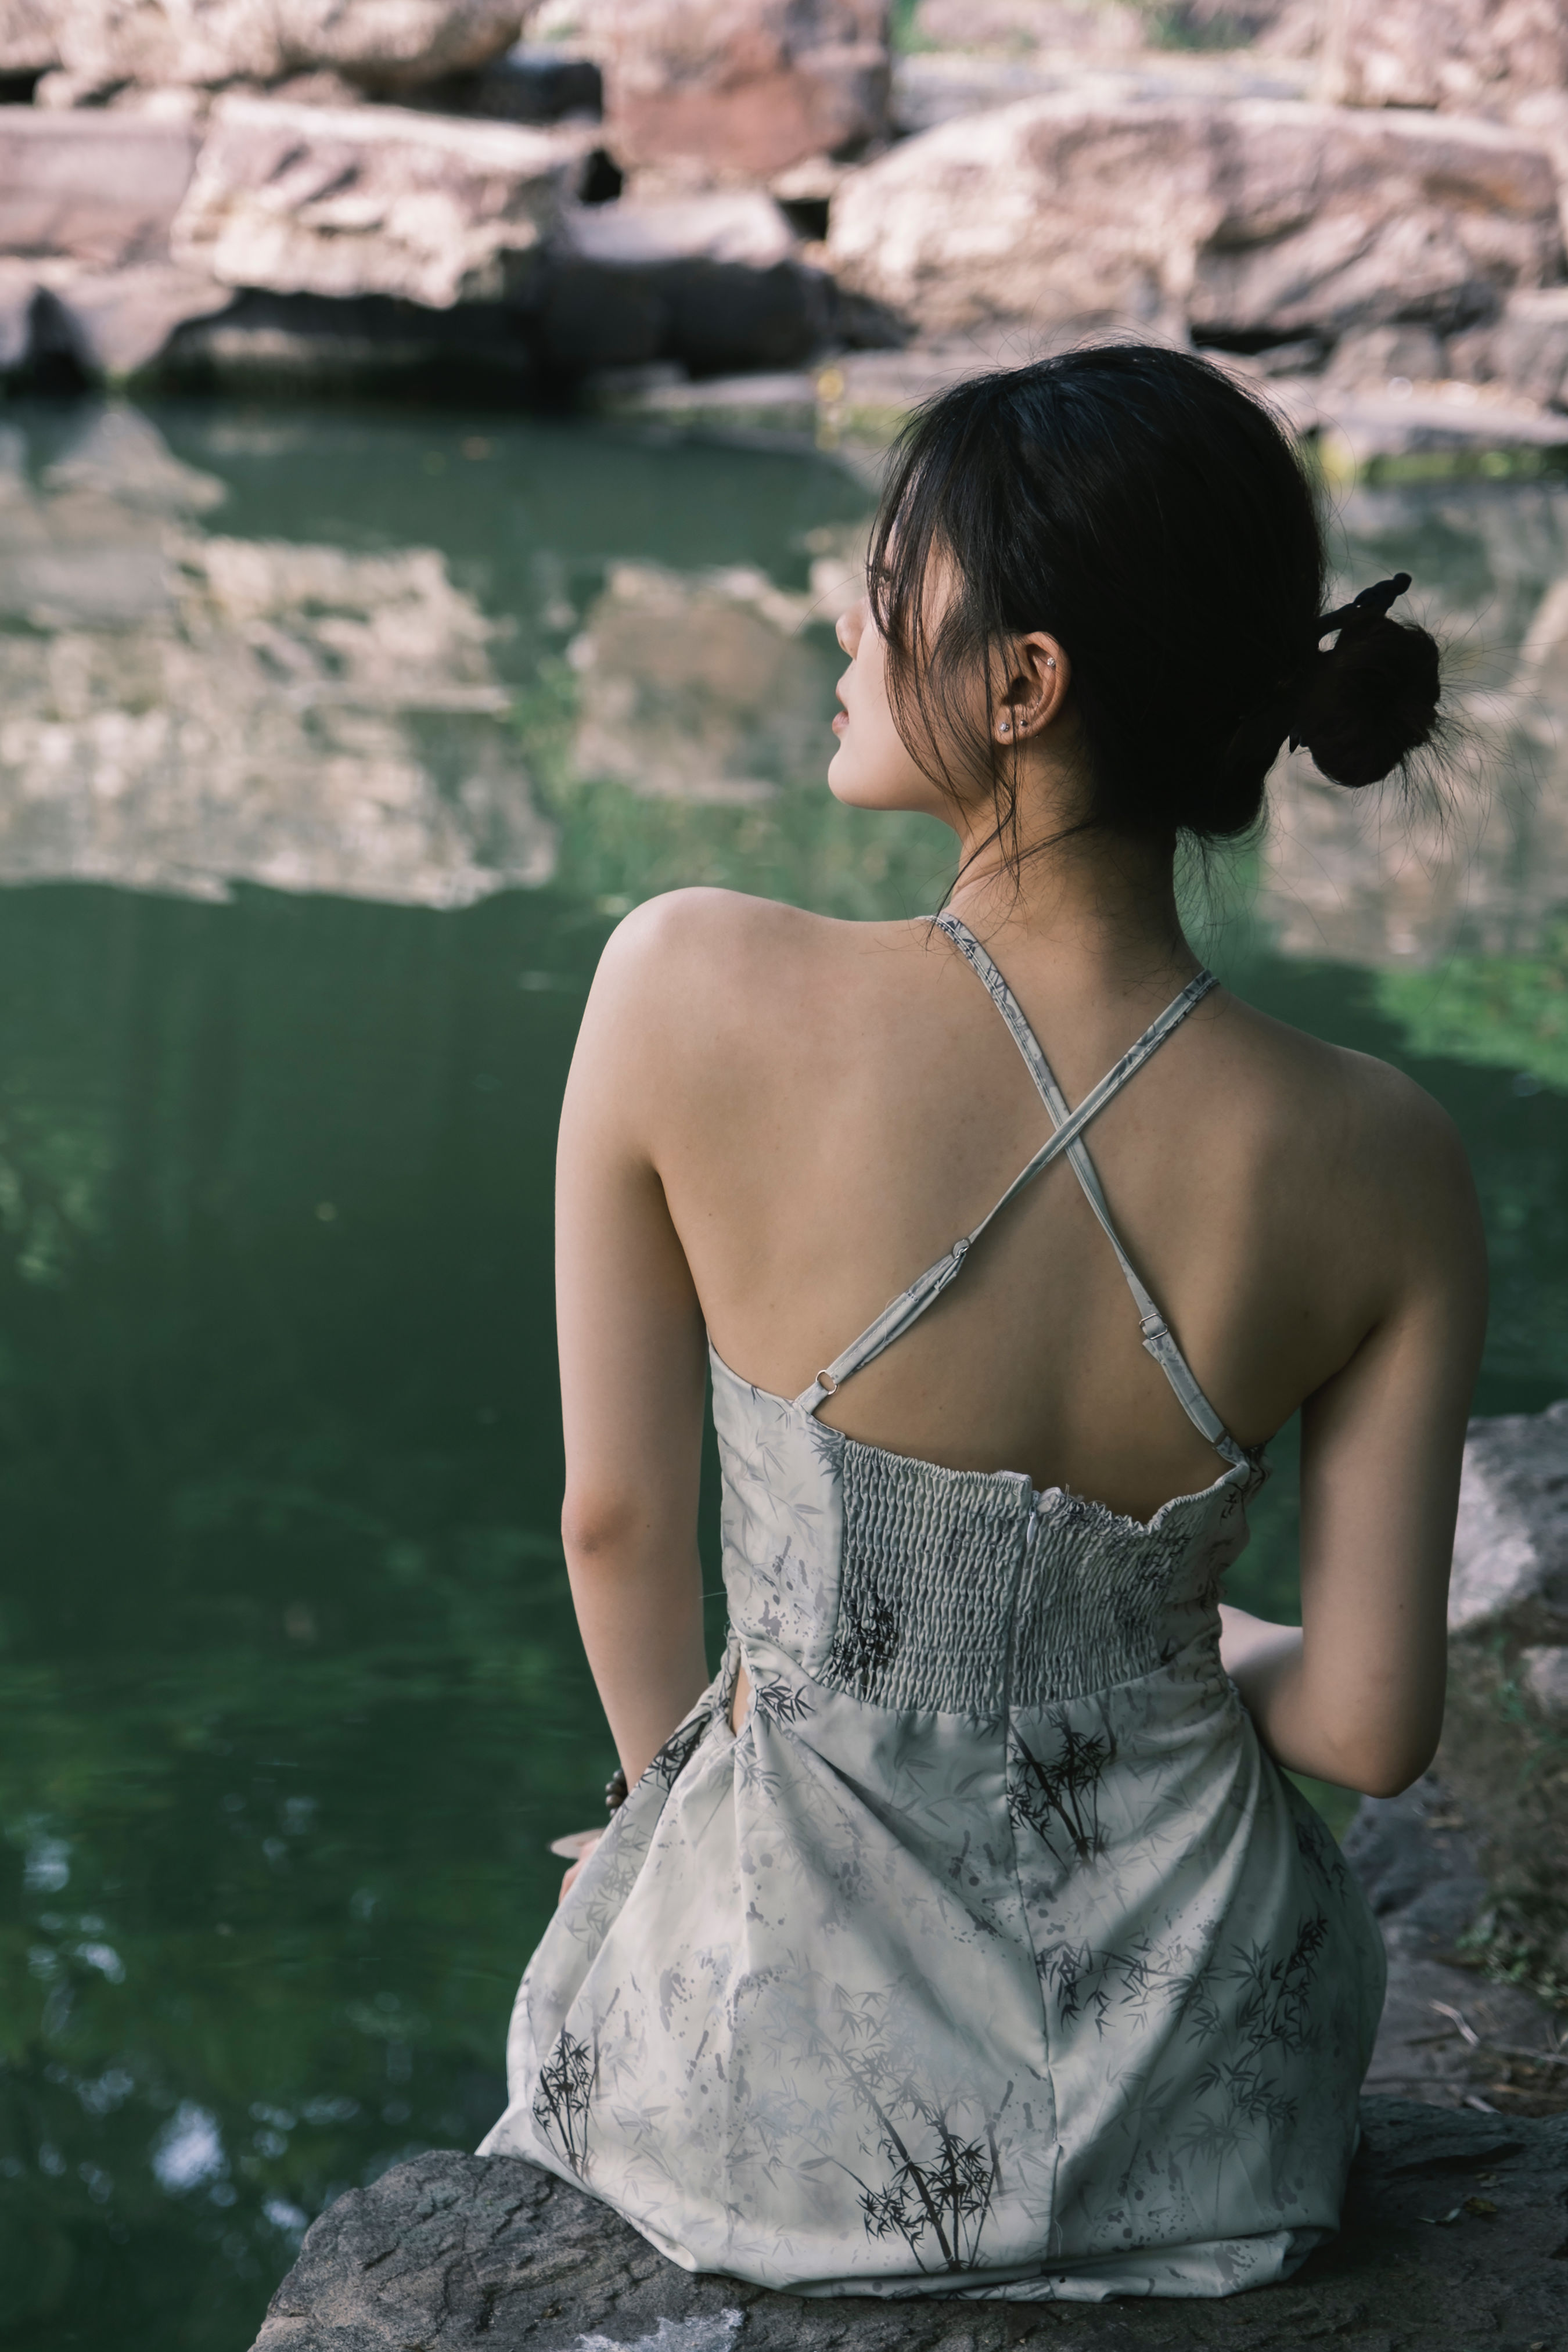 春和景明 古典 中国风 人像 摄影 女人 唯美